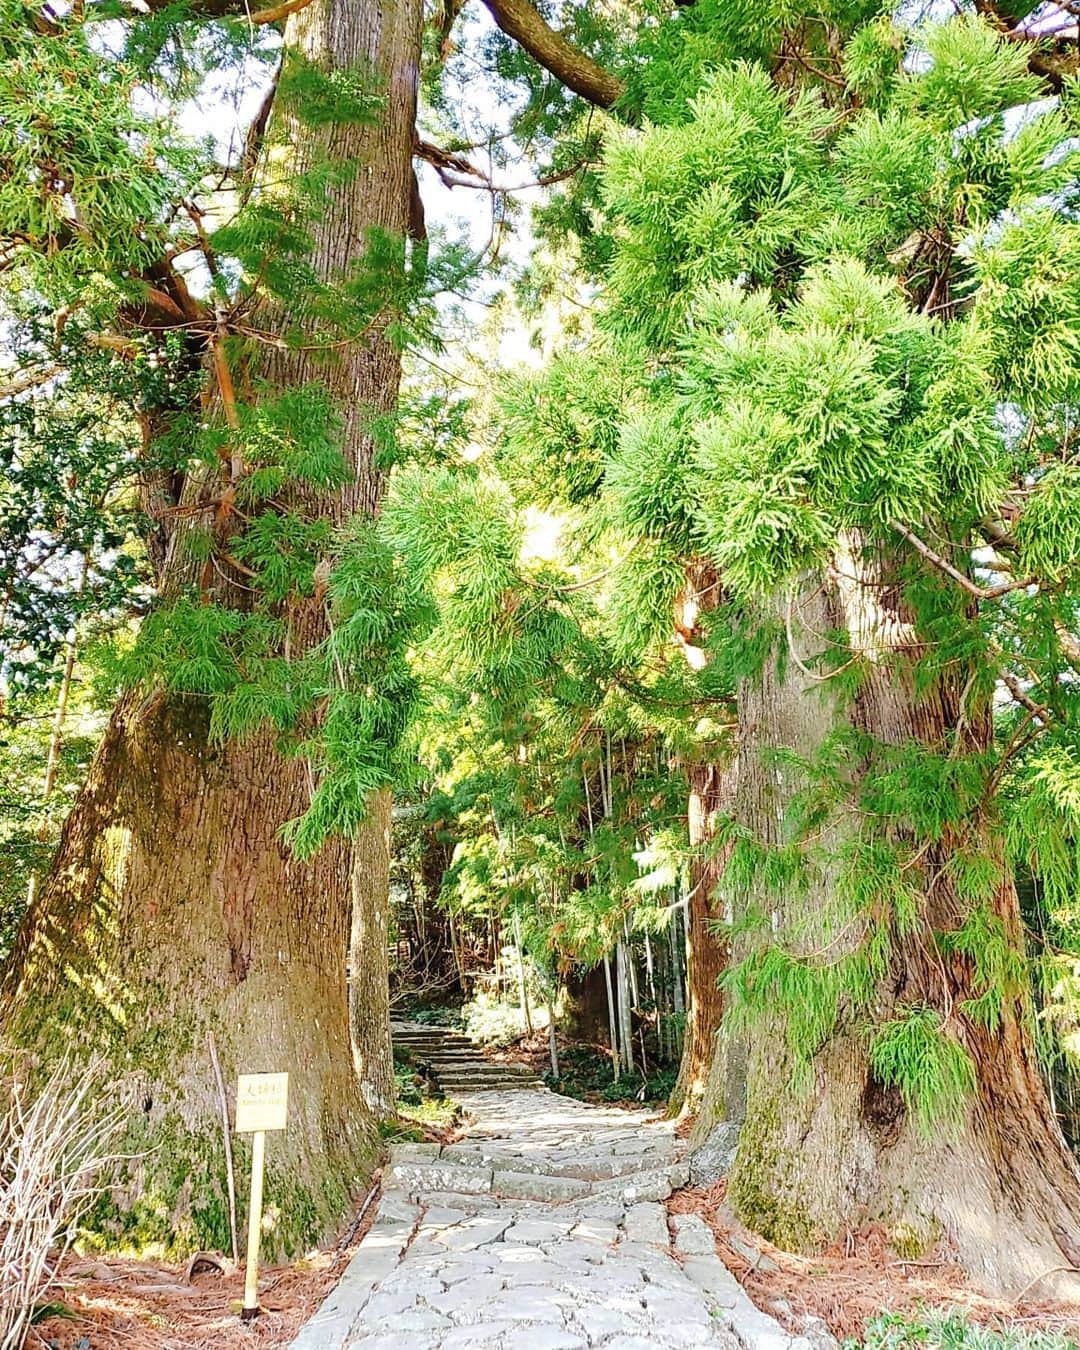 鈴木理香子のインスタグラム：「11月22日『いい夫婦の日』と 前回投稿からの繋がり『熊野古道』をかけて 本日は『夫婦杉』をご紹介🌲❤🌲  世界遺産 熊野古道 大門坂の入り口に 人々を出迎えるように立ち並らぶ夫婦杉👫 樹齢800年。高さは約55メートル。 鎌倉時代から時と人の流れを見てきた木。🌲🌲 近くで見ると大きさに圧倒されます。  鈴木さんの祖先は熊野古道の道案内を努め、 熊野信仰を伝えたそうです🌾 木漏れ日がこぼれる参道を歩きながら 『祖先の鈴木さんも歩いたんだなぁ』 と想いを馳せました😌  雨の日も晴れの日も  夫婦杉のような夫婦でありたいものですね😊😊  #11月22日 #1122 #いい夫婦の日 #夫婦杉 #和歌山 #世界遺産 #熊野古道  #和歌山 #鈴木さん #Miss鈴木 #鈴木理香子 #日テレNEWS24 #過去pick #japan #japantrip #trip」